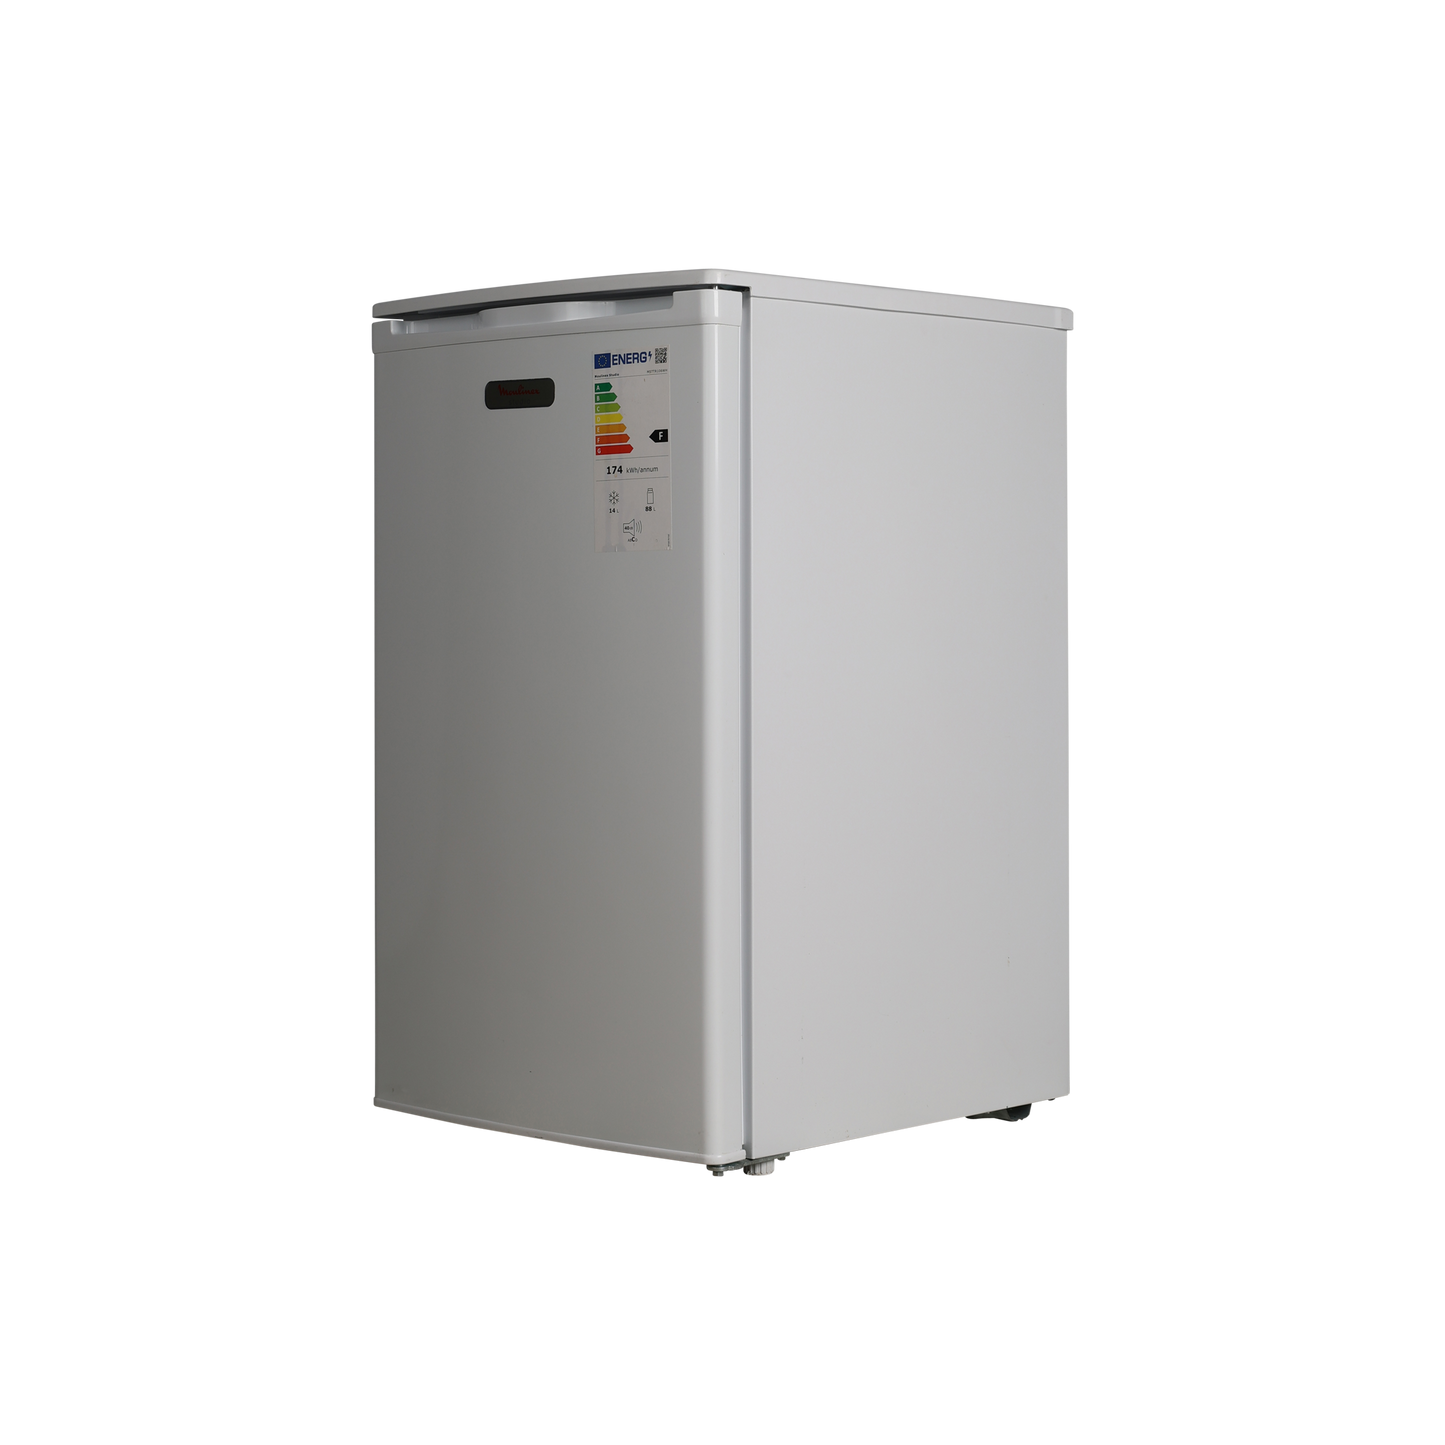 Réfrigérateur Compact 102 L Reconditionné MOULINEX STUDIO MSTTR106WH : vue du côté droit